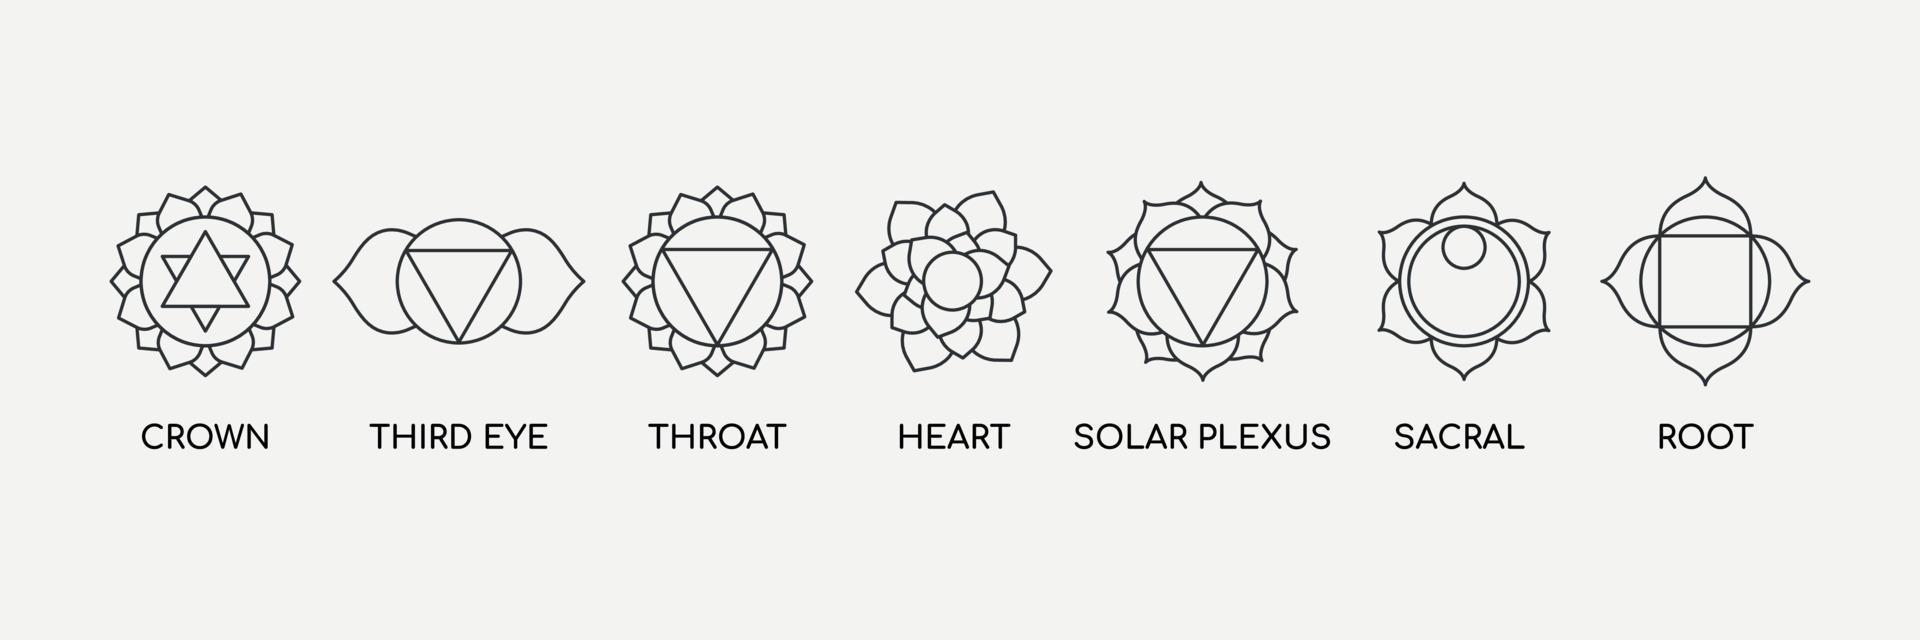 zeven chakra's met naamgeving lijn icon set. energiecentra van het lichaam, gebruikt in de ayurveda en het hindoeïsme. yoga, boeddhisme symbool... vectorillustratie vector